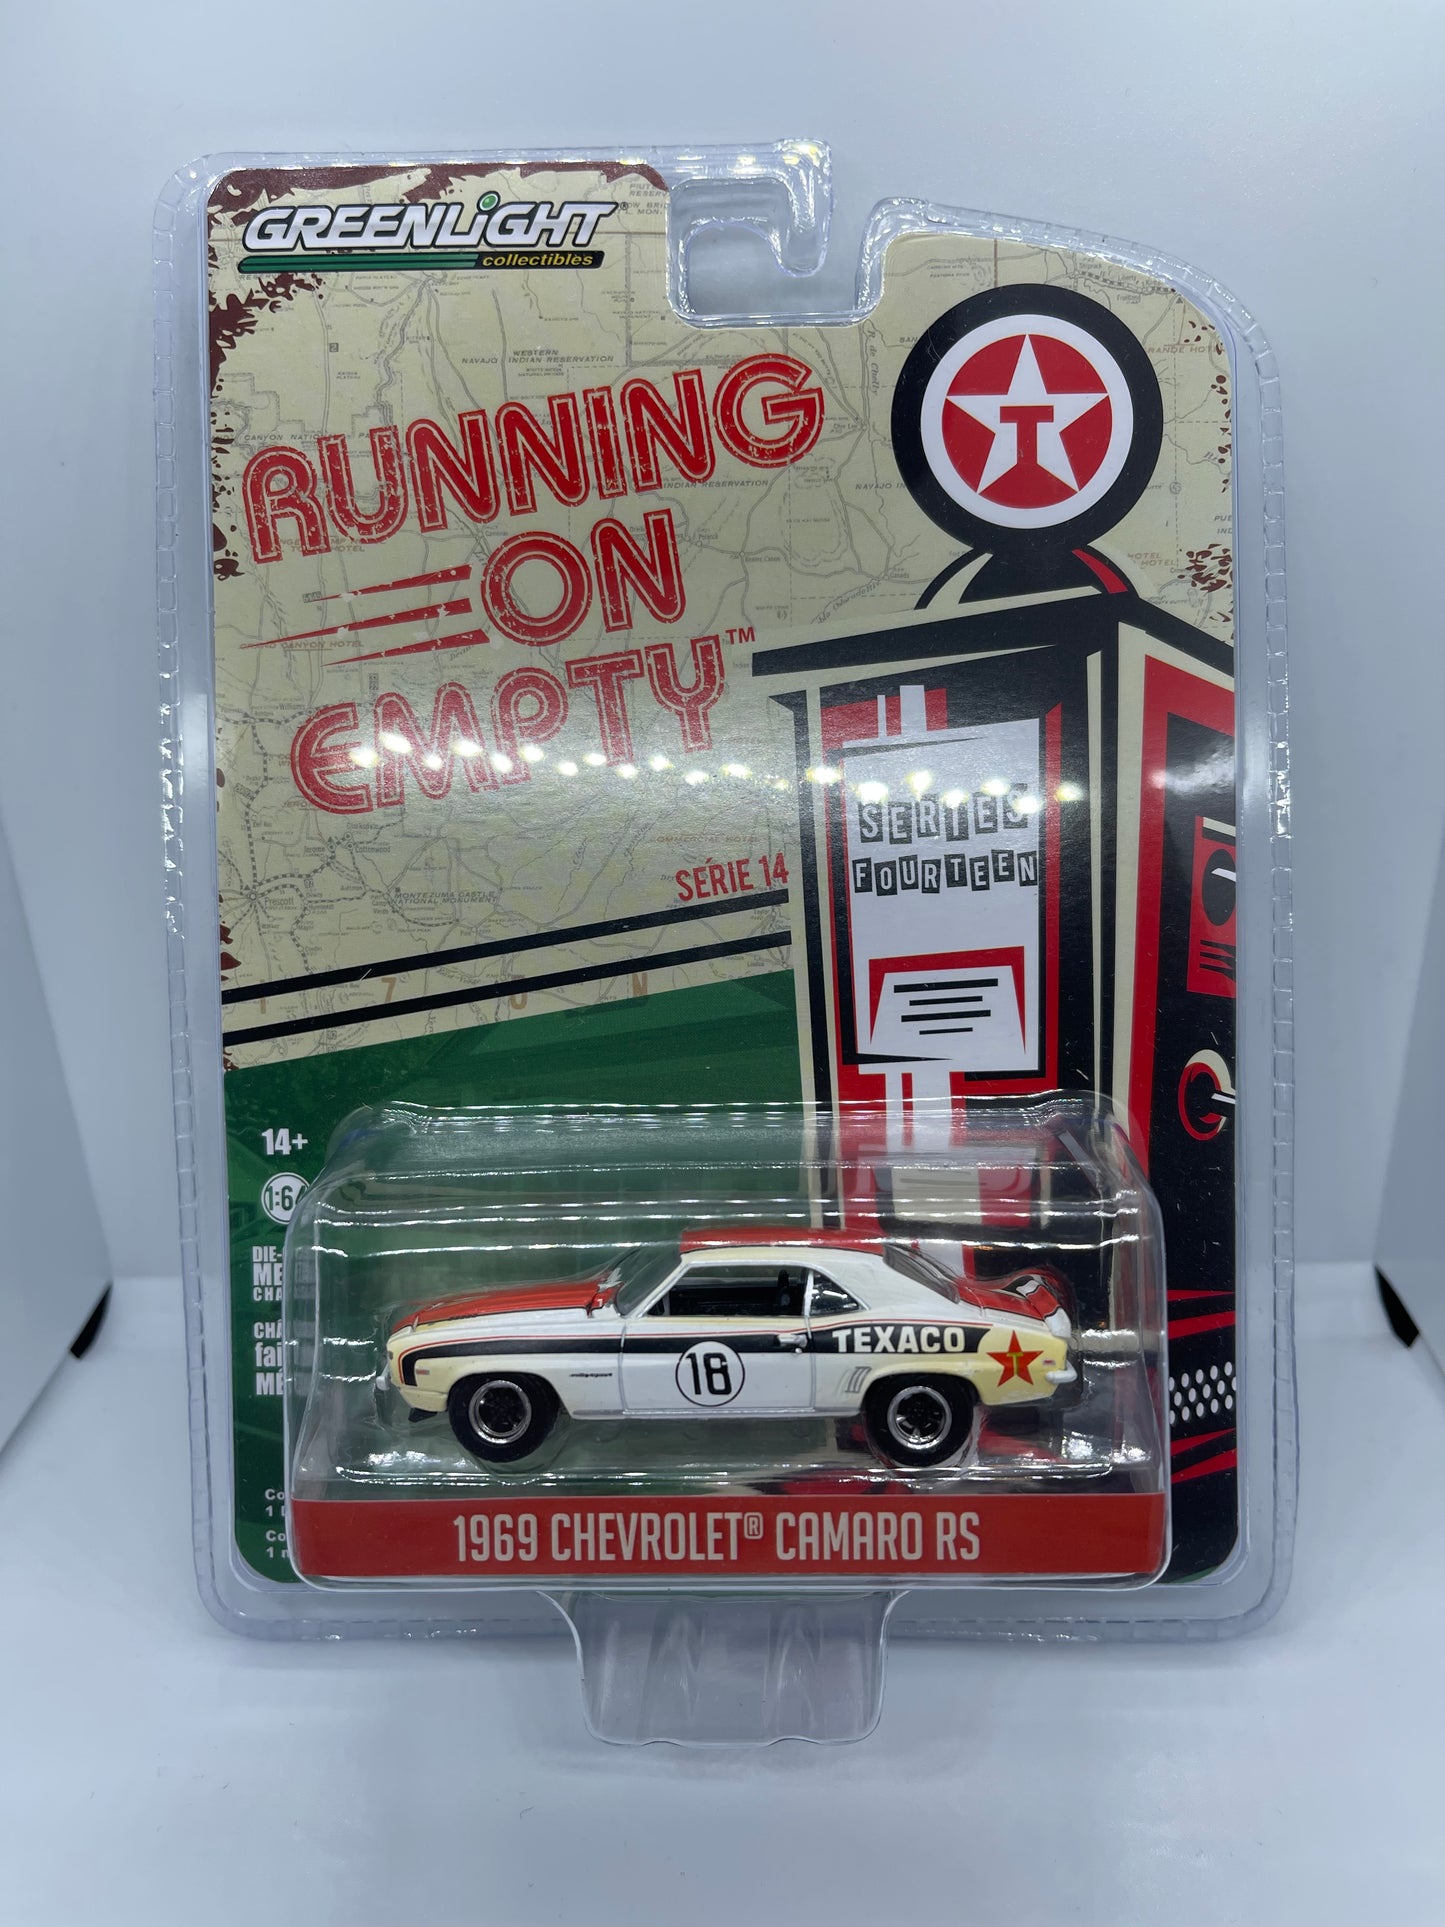 Greenlight - 1969 Chevrolet Camaro - Running on Empty